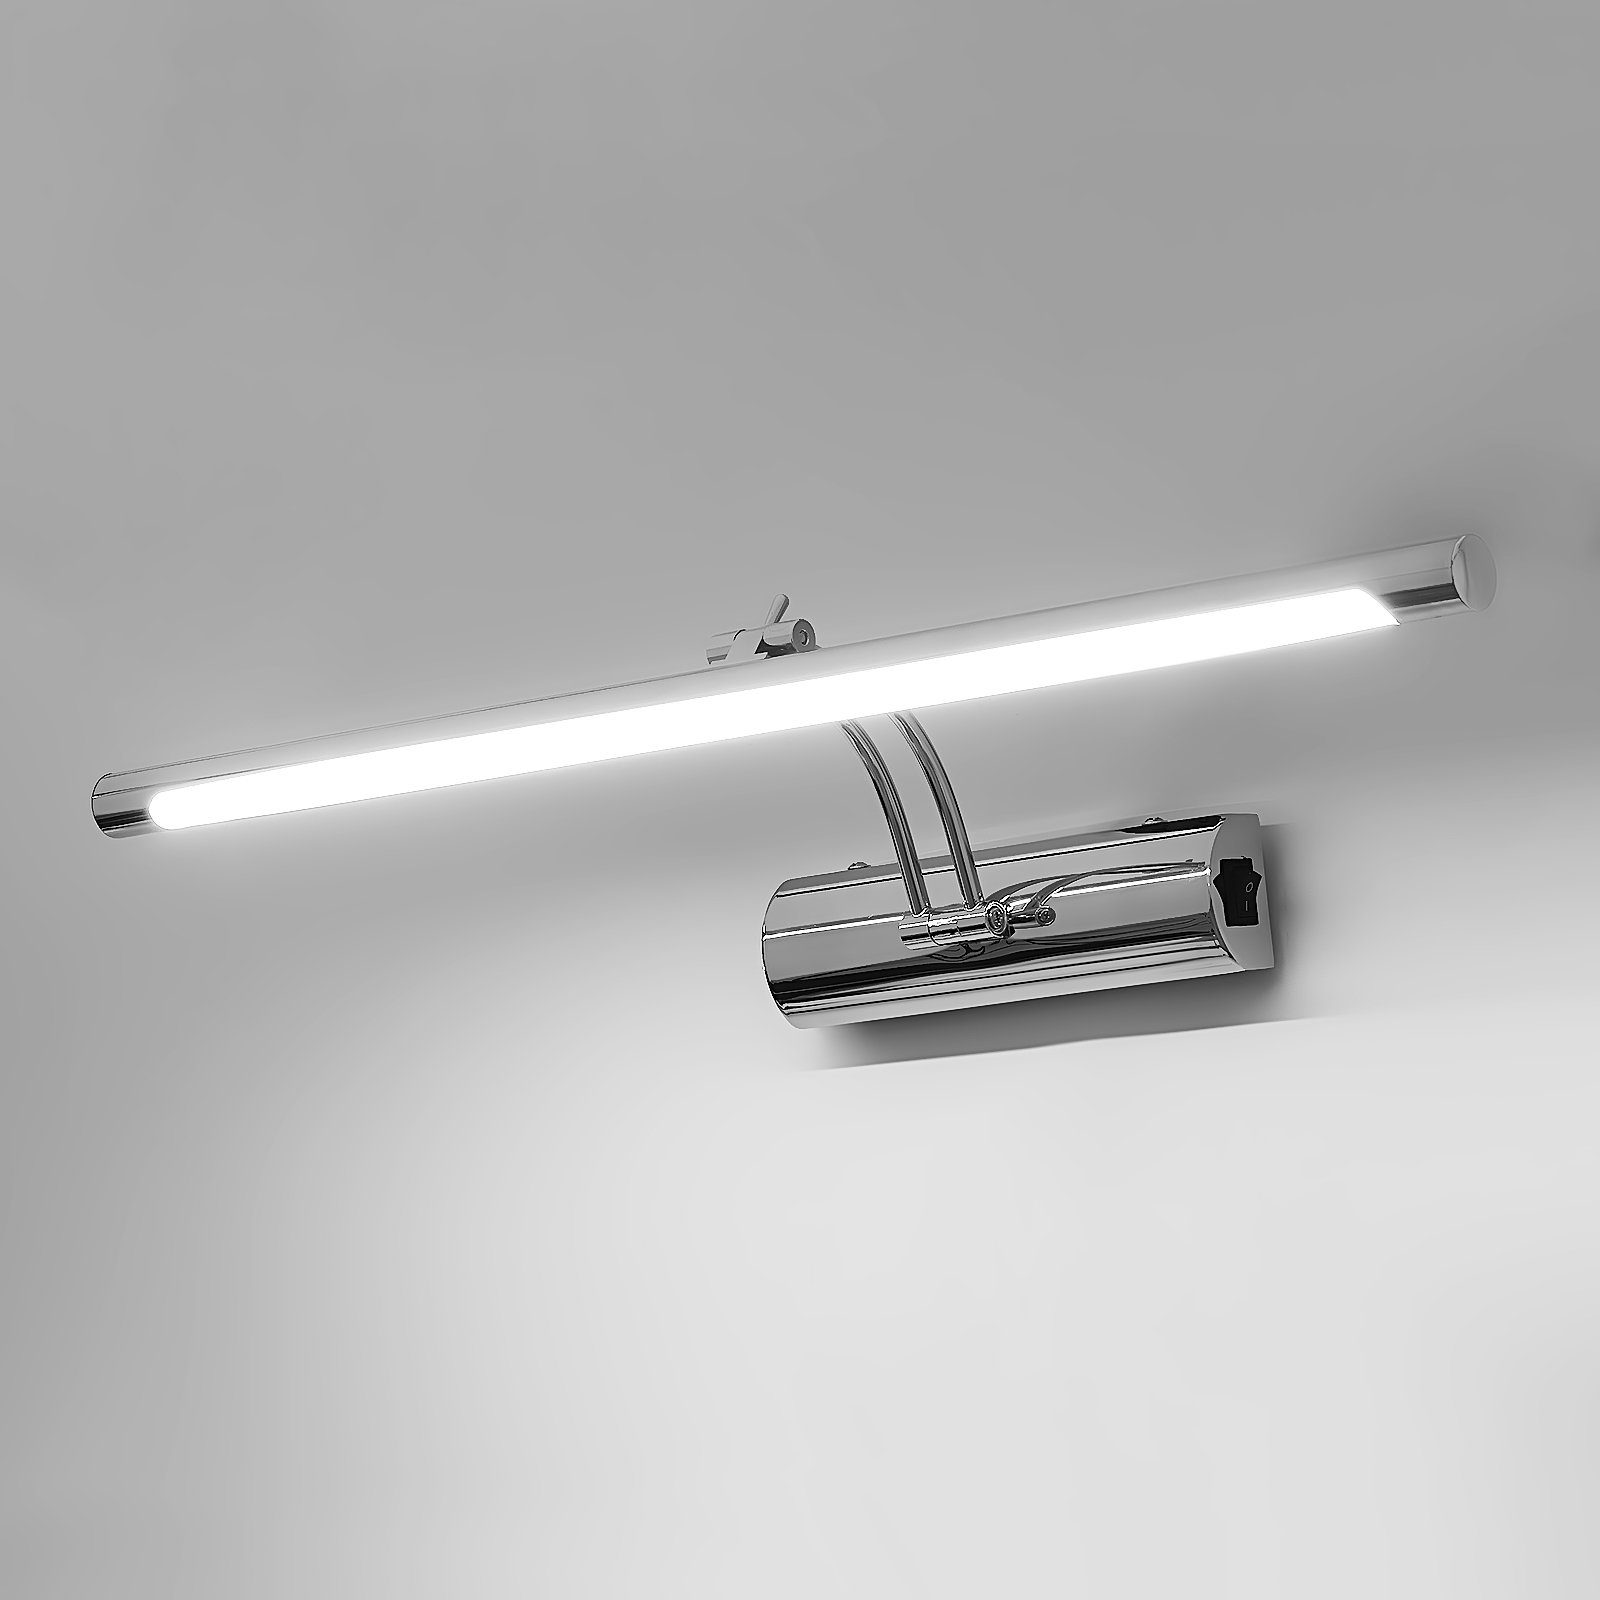 Bad Spiegelleuchte iscooter Beleuchtung Schminklicht 12W Badleuchte, LED